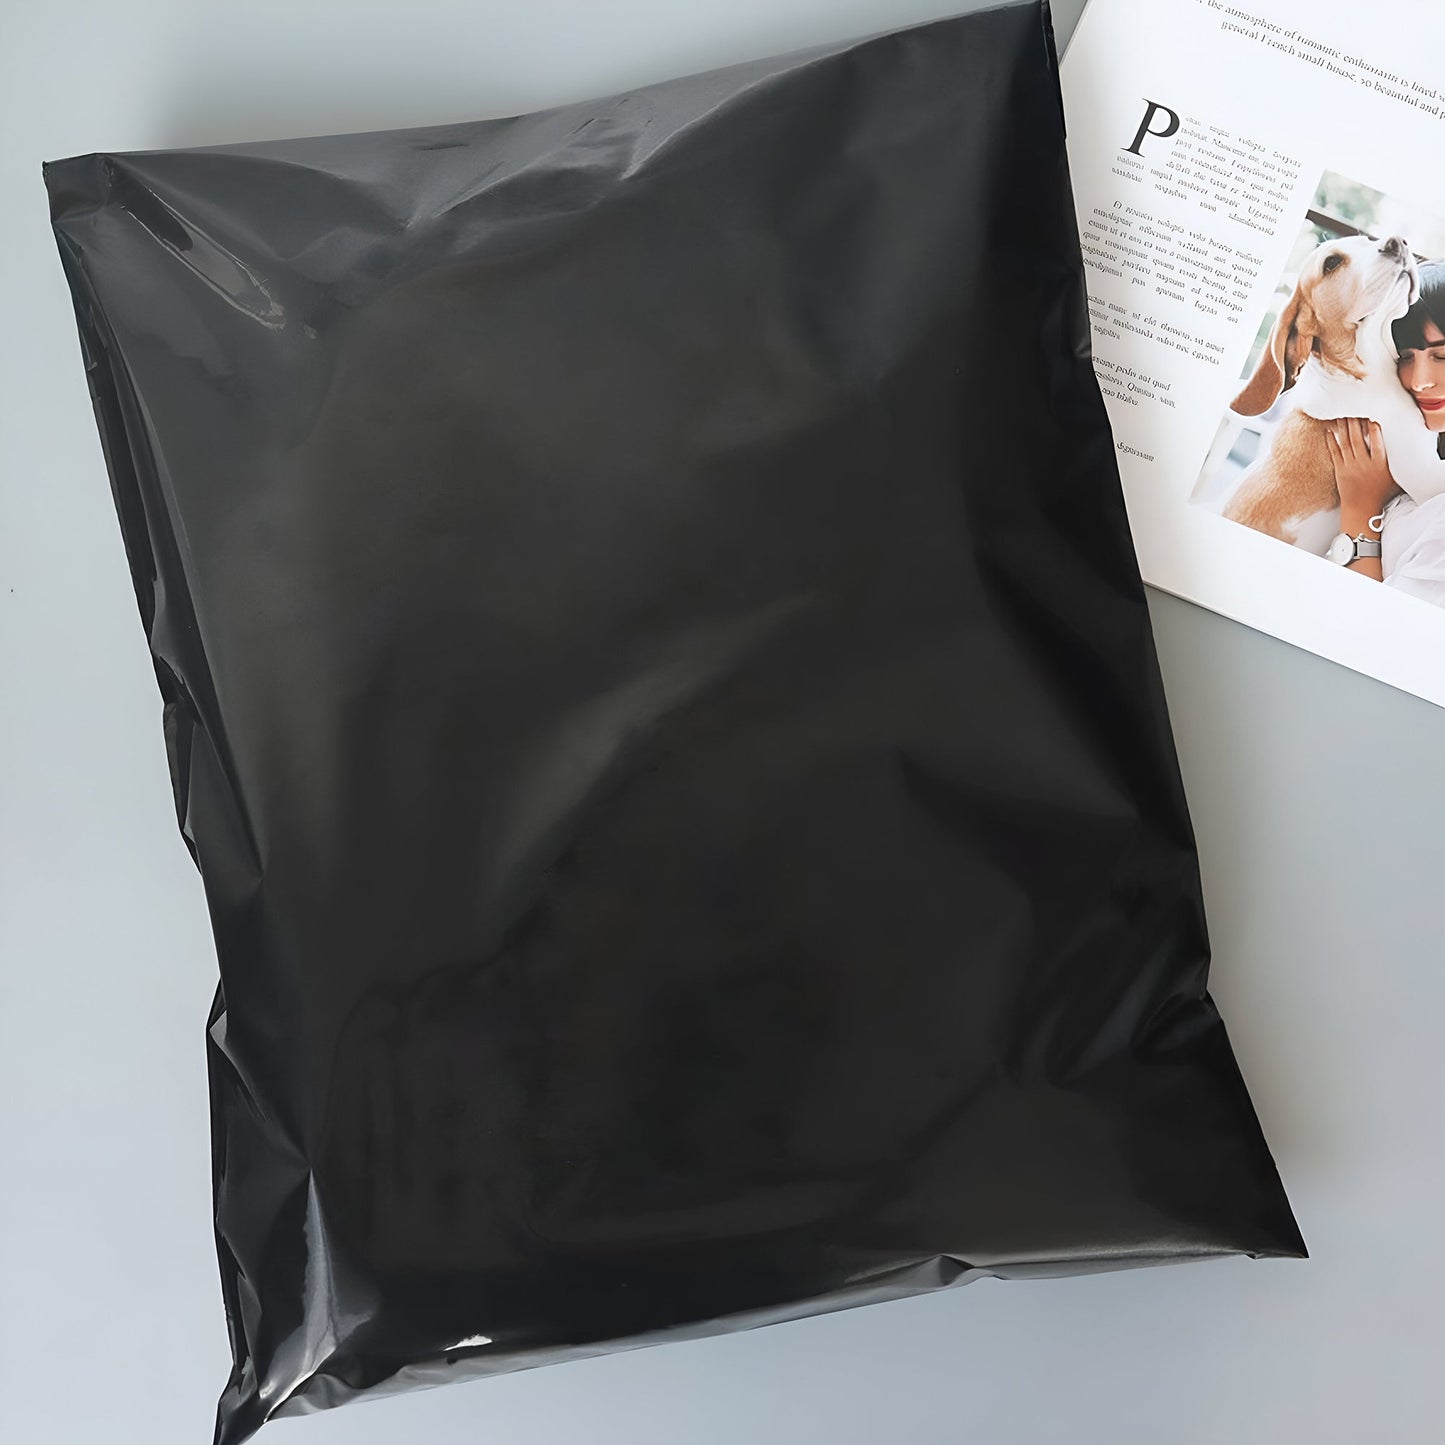  Shipping Postage Self Sealing Bag